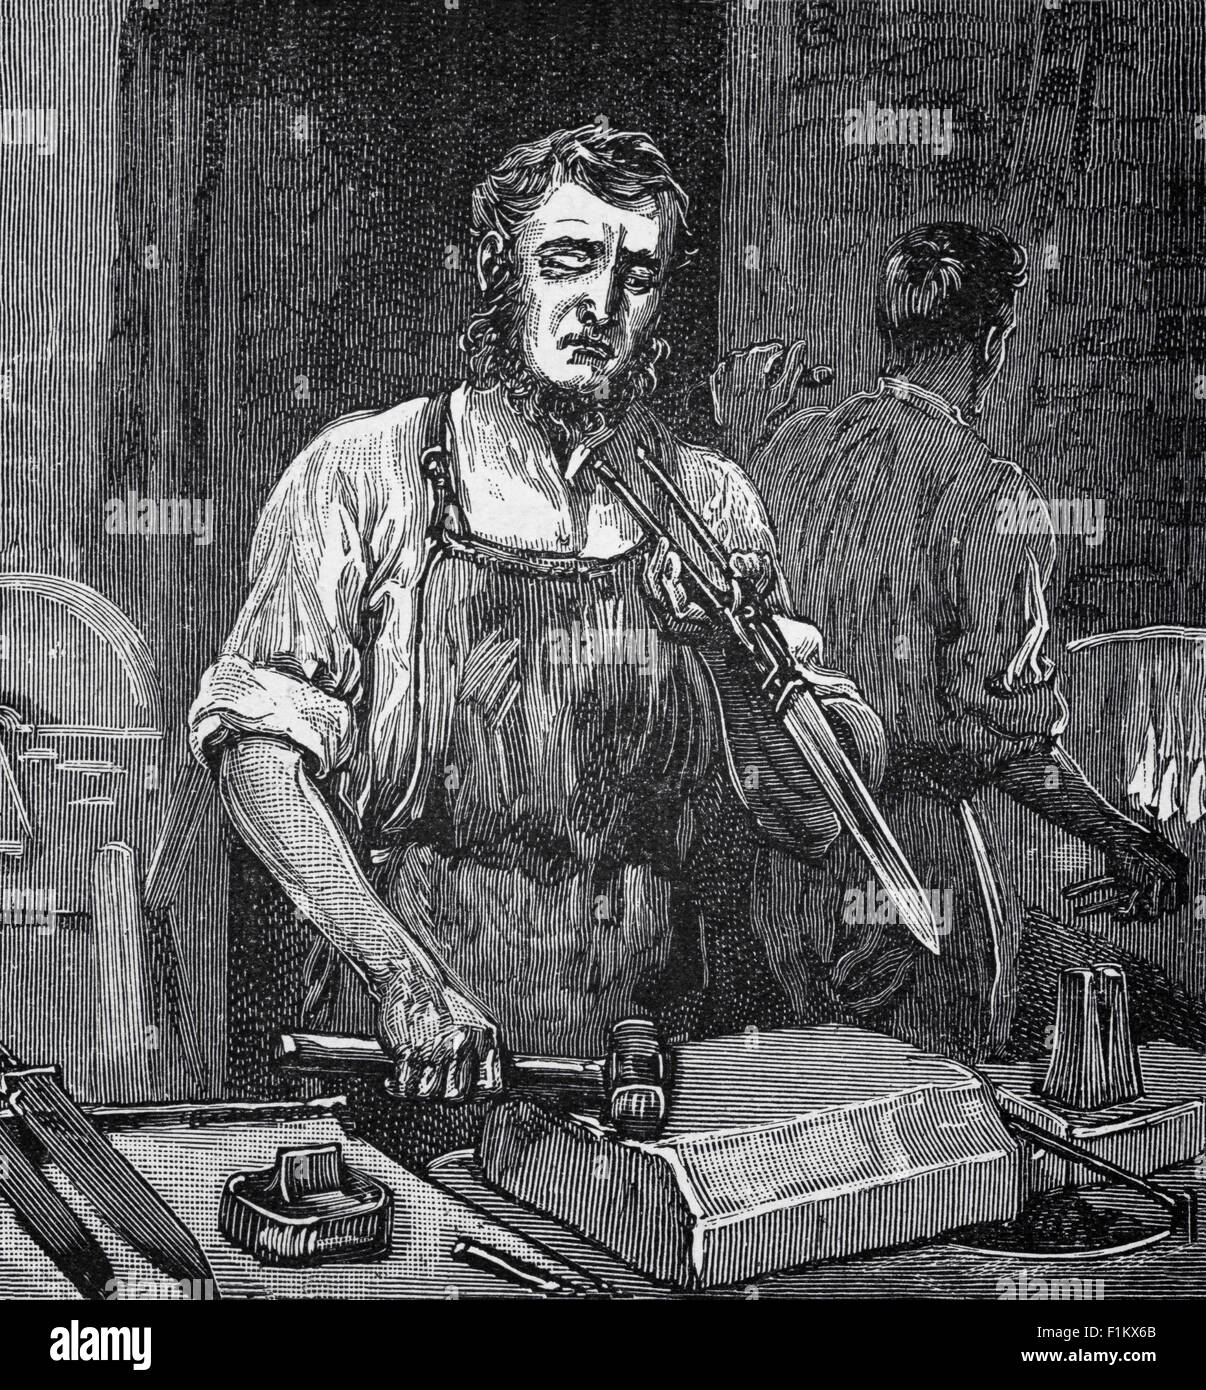 Ein 19th Jahrhundert englischer Cutler Herstellung Messer in Sheffield, Yorkshire, England. Es war während der 1740s, eine Form des Tiegelstahlverfahrens entdeckt wurde, die die Herstellung einer besseren Qualität von Stahl als bisher möglich, ideal für Besteck ermöglicht. Stockfoto